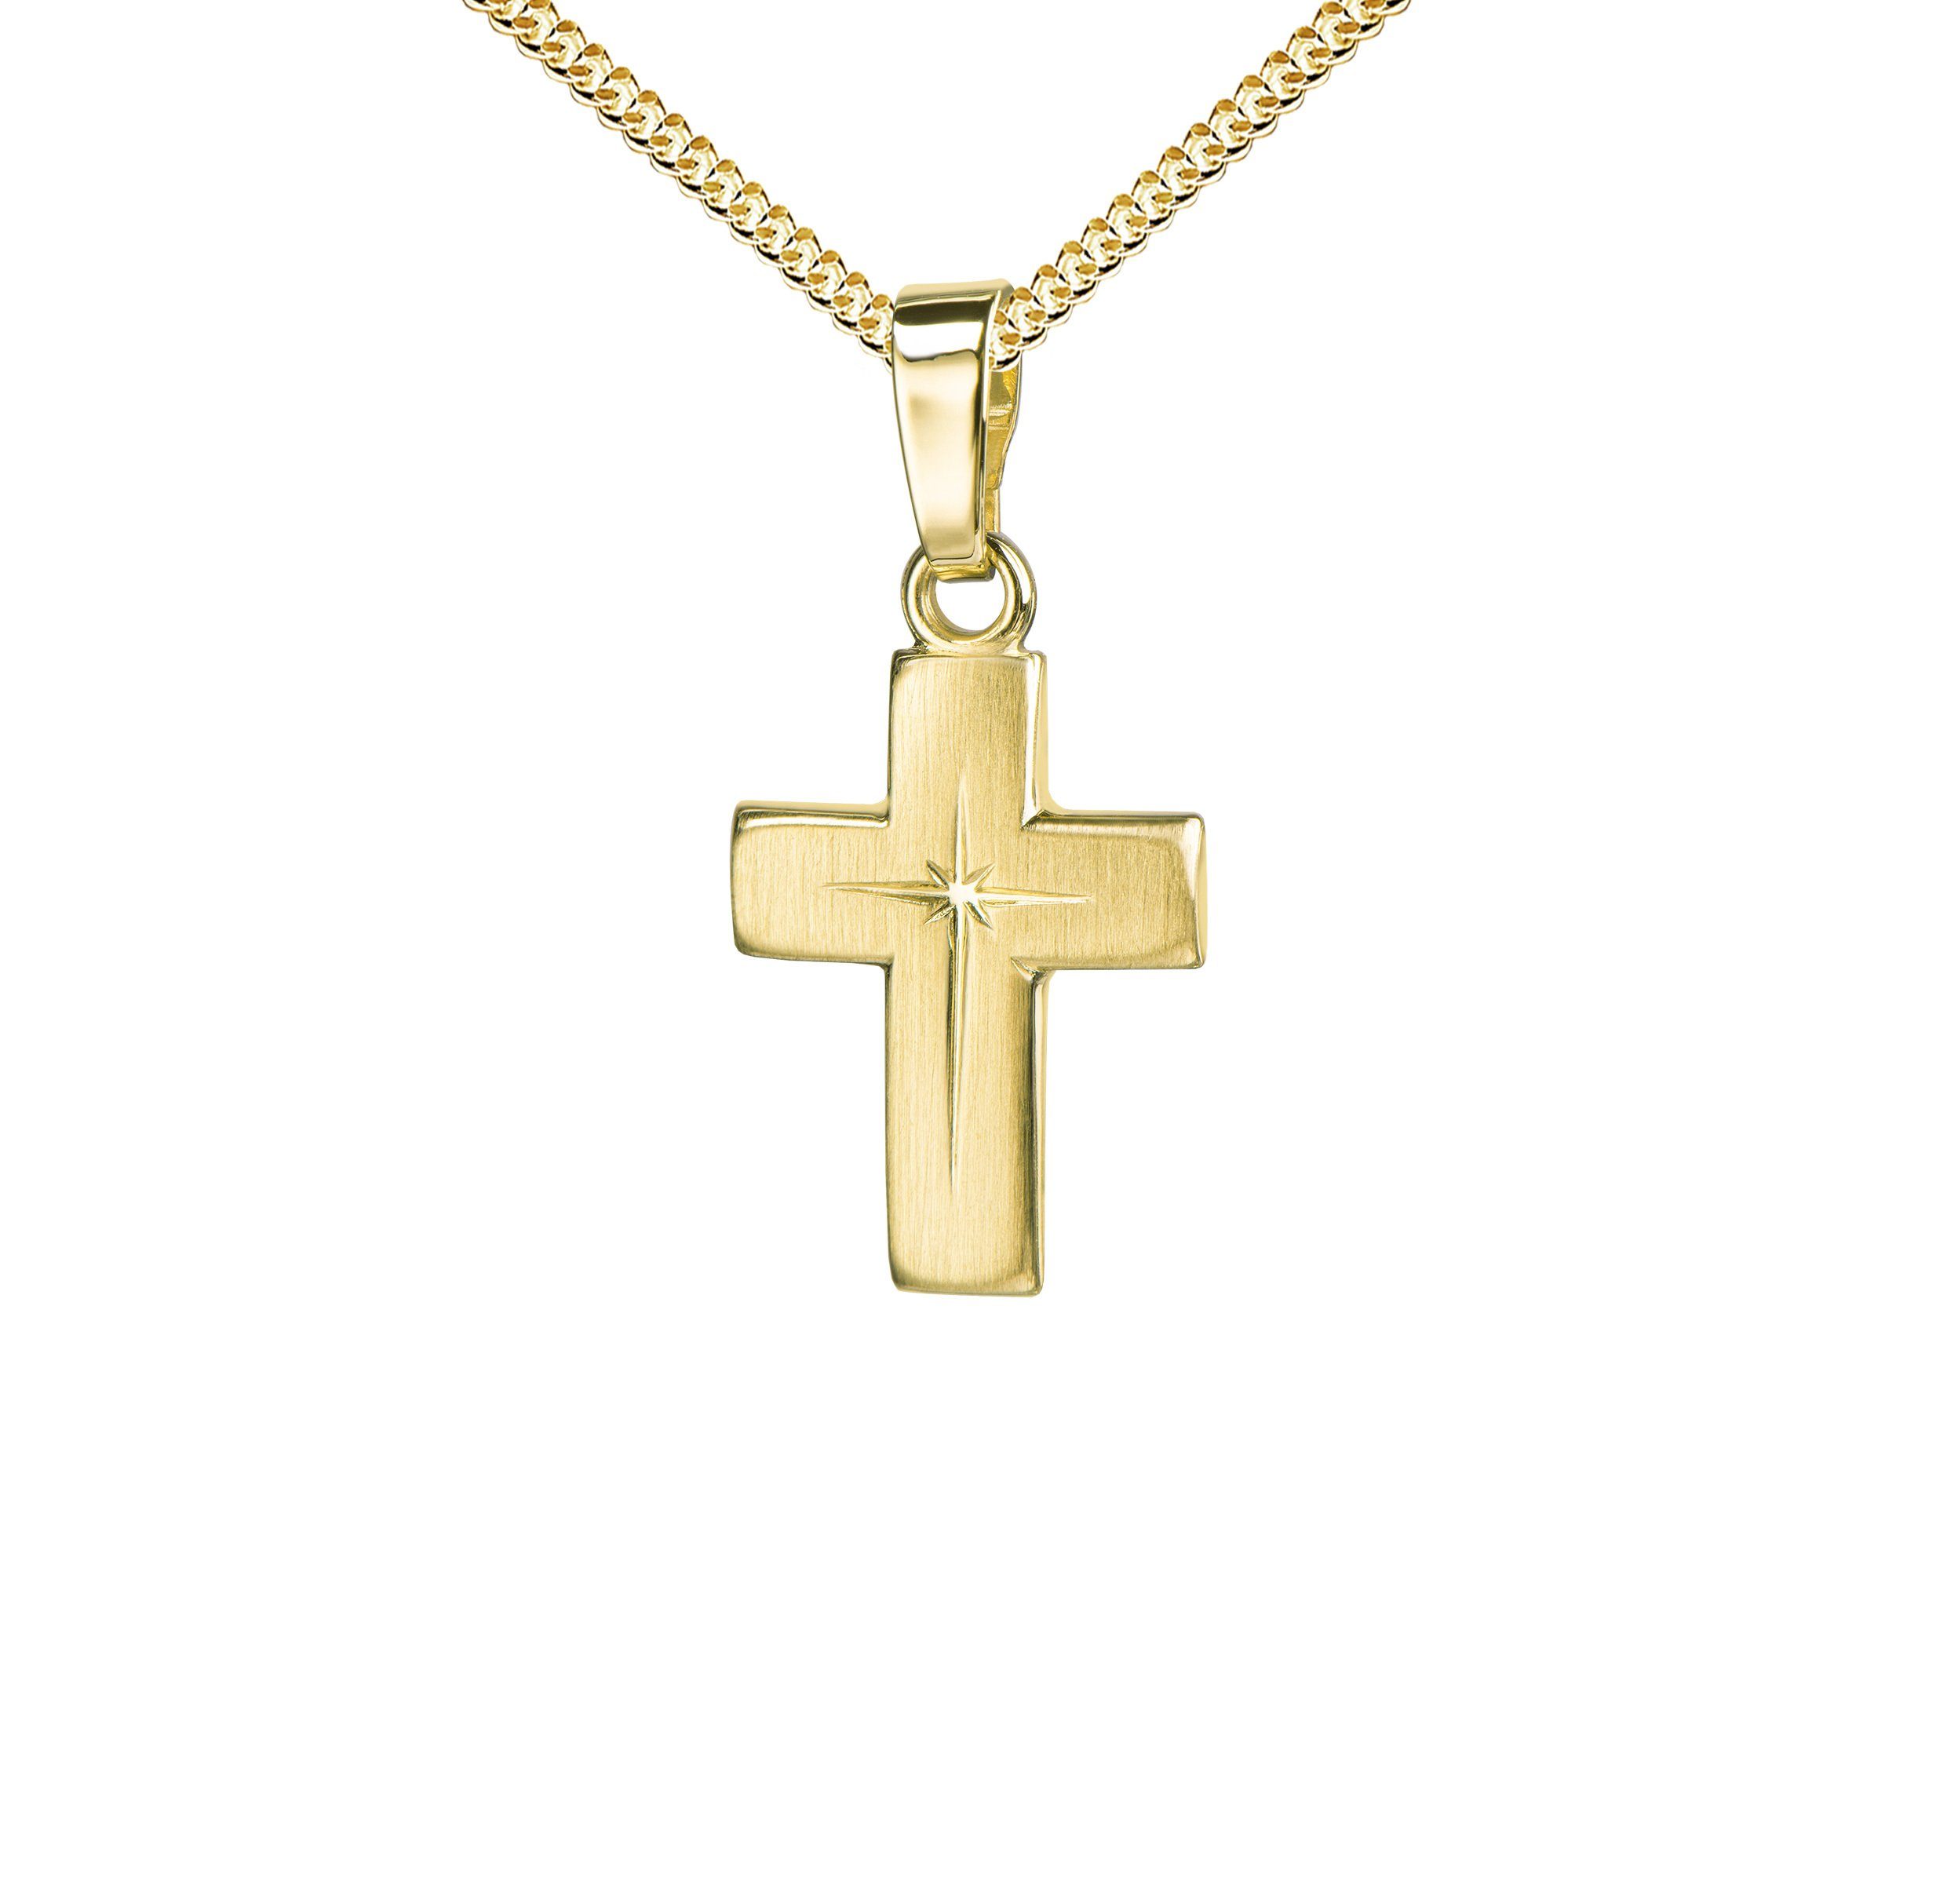 JEVELION Kreuzkette kleiner Kreuzanhänger 333 Gold - Made in Germany (Goldkreuz, für Damen und Kinder), Mit Kette vergoldet- Länge wählbar 36 - 70 cm oder ohne Kette.